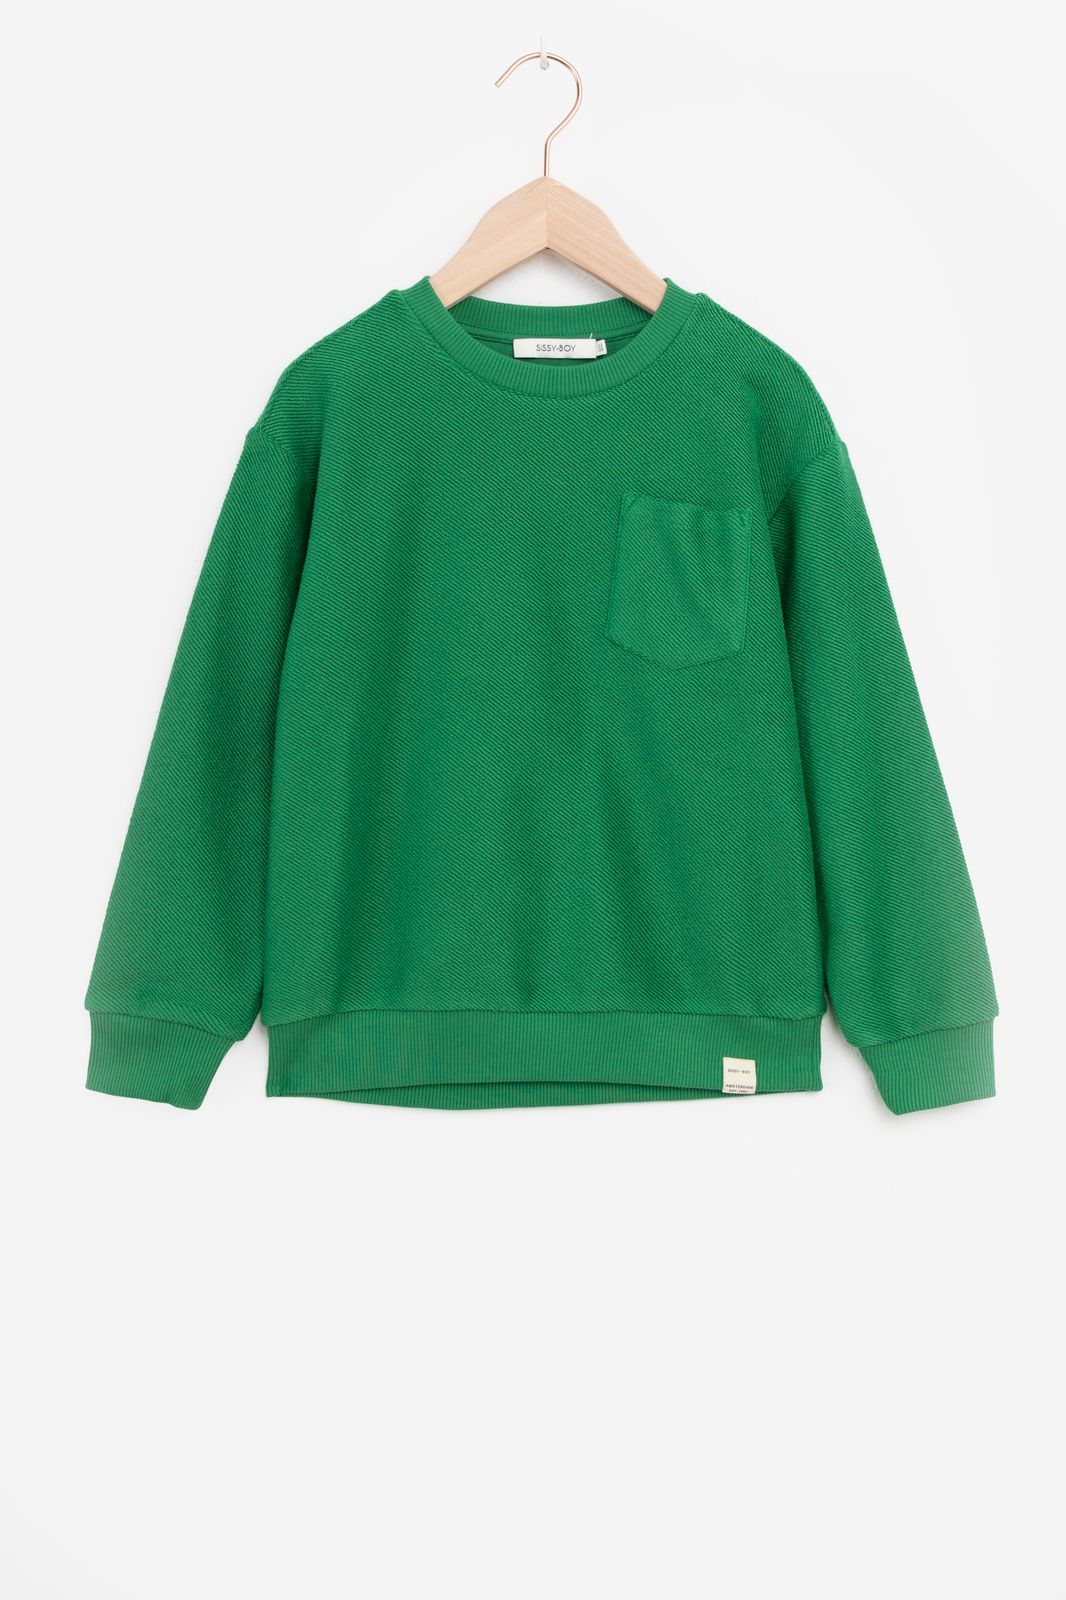 Sweater mit Brusttasche - grün